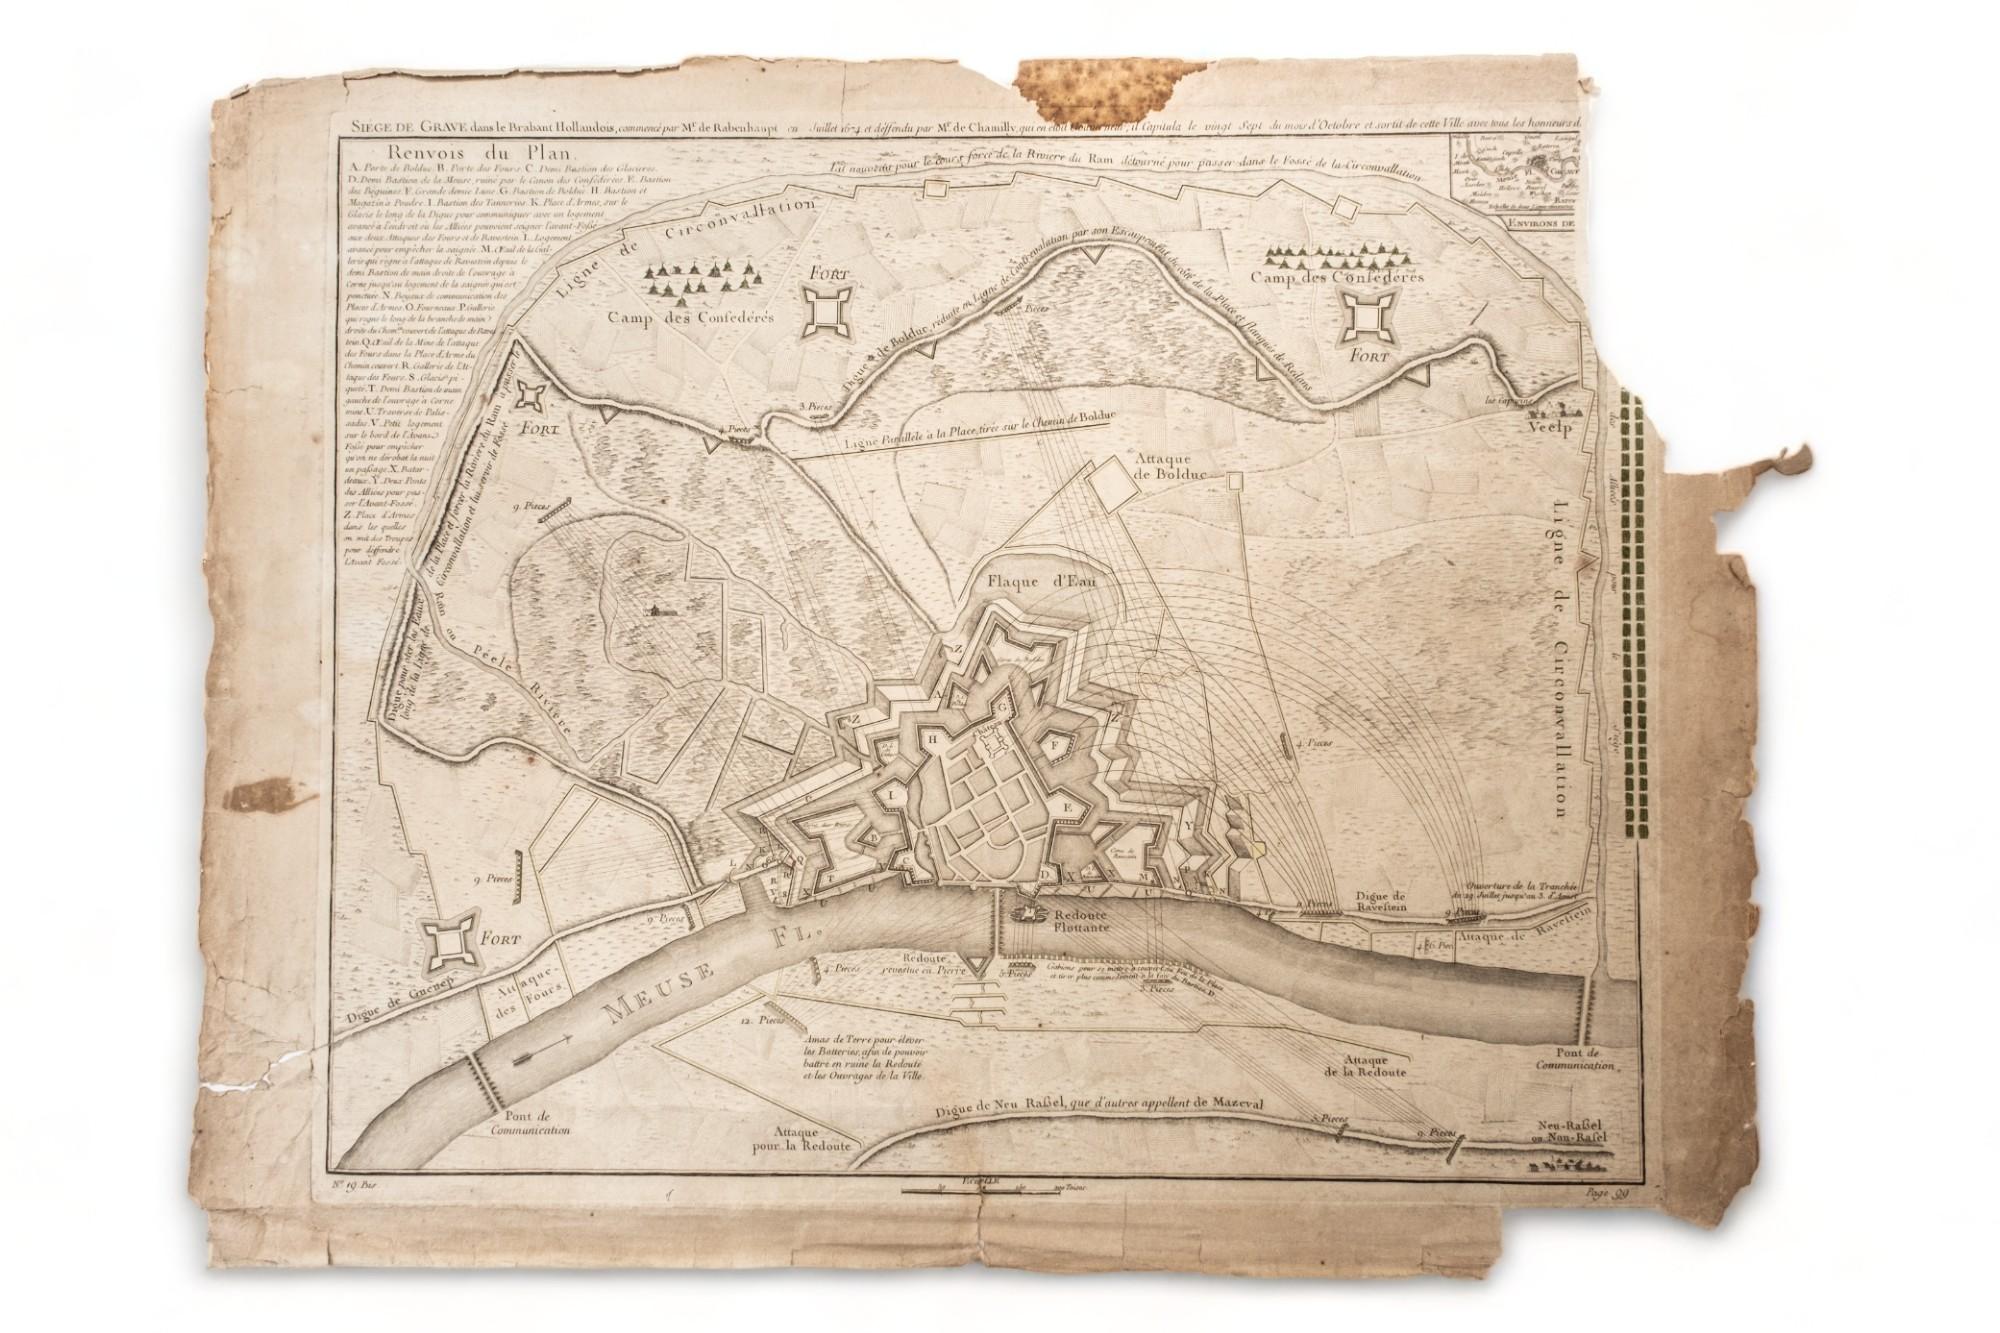 RARE gravure cartographique du siège de Graves, réalisée par Guillaume III, également connu sous le nom de Guillaume d'Orange, et datant du 17e-18e siècle,
Le siège de Grave, dans le Brabant néerlandais, a été entamé par Monsieur Carl de Rabenhaupt